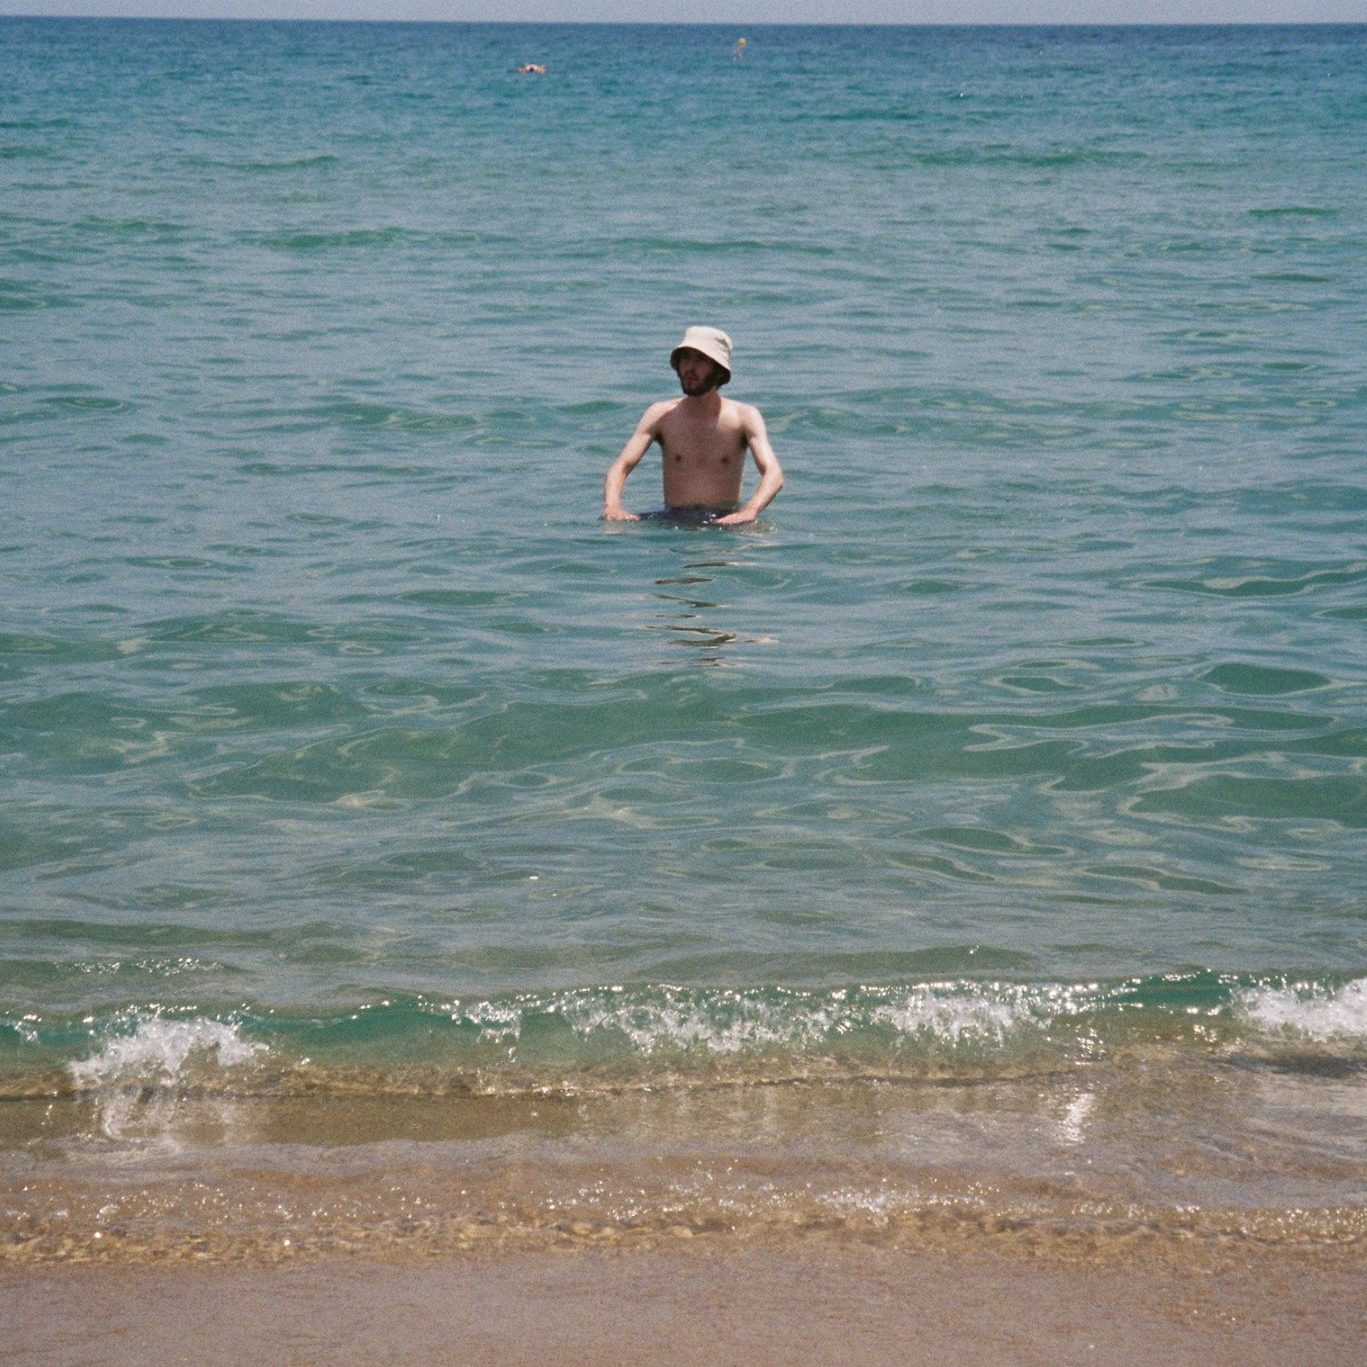 Max swimming in the sea